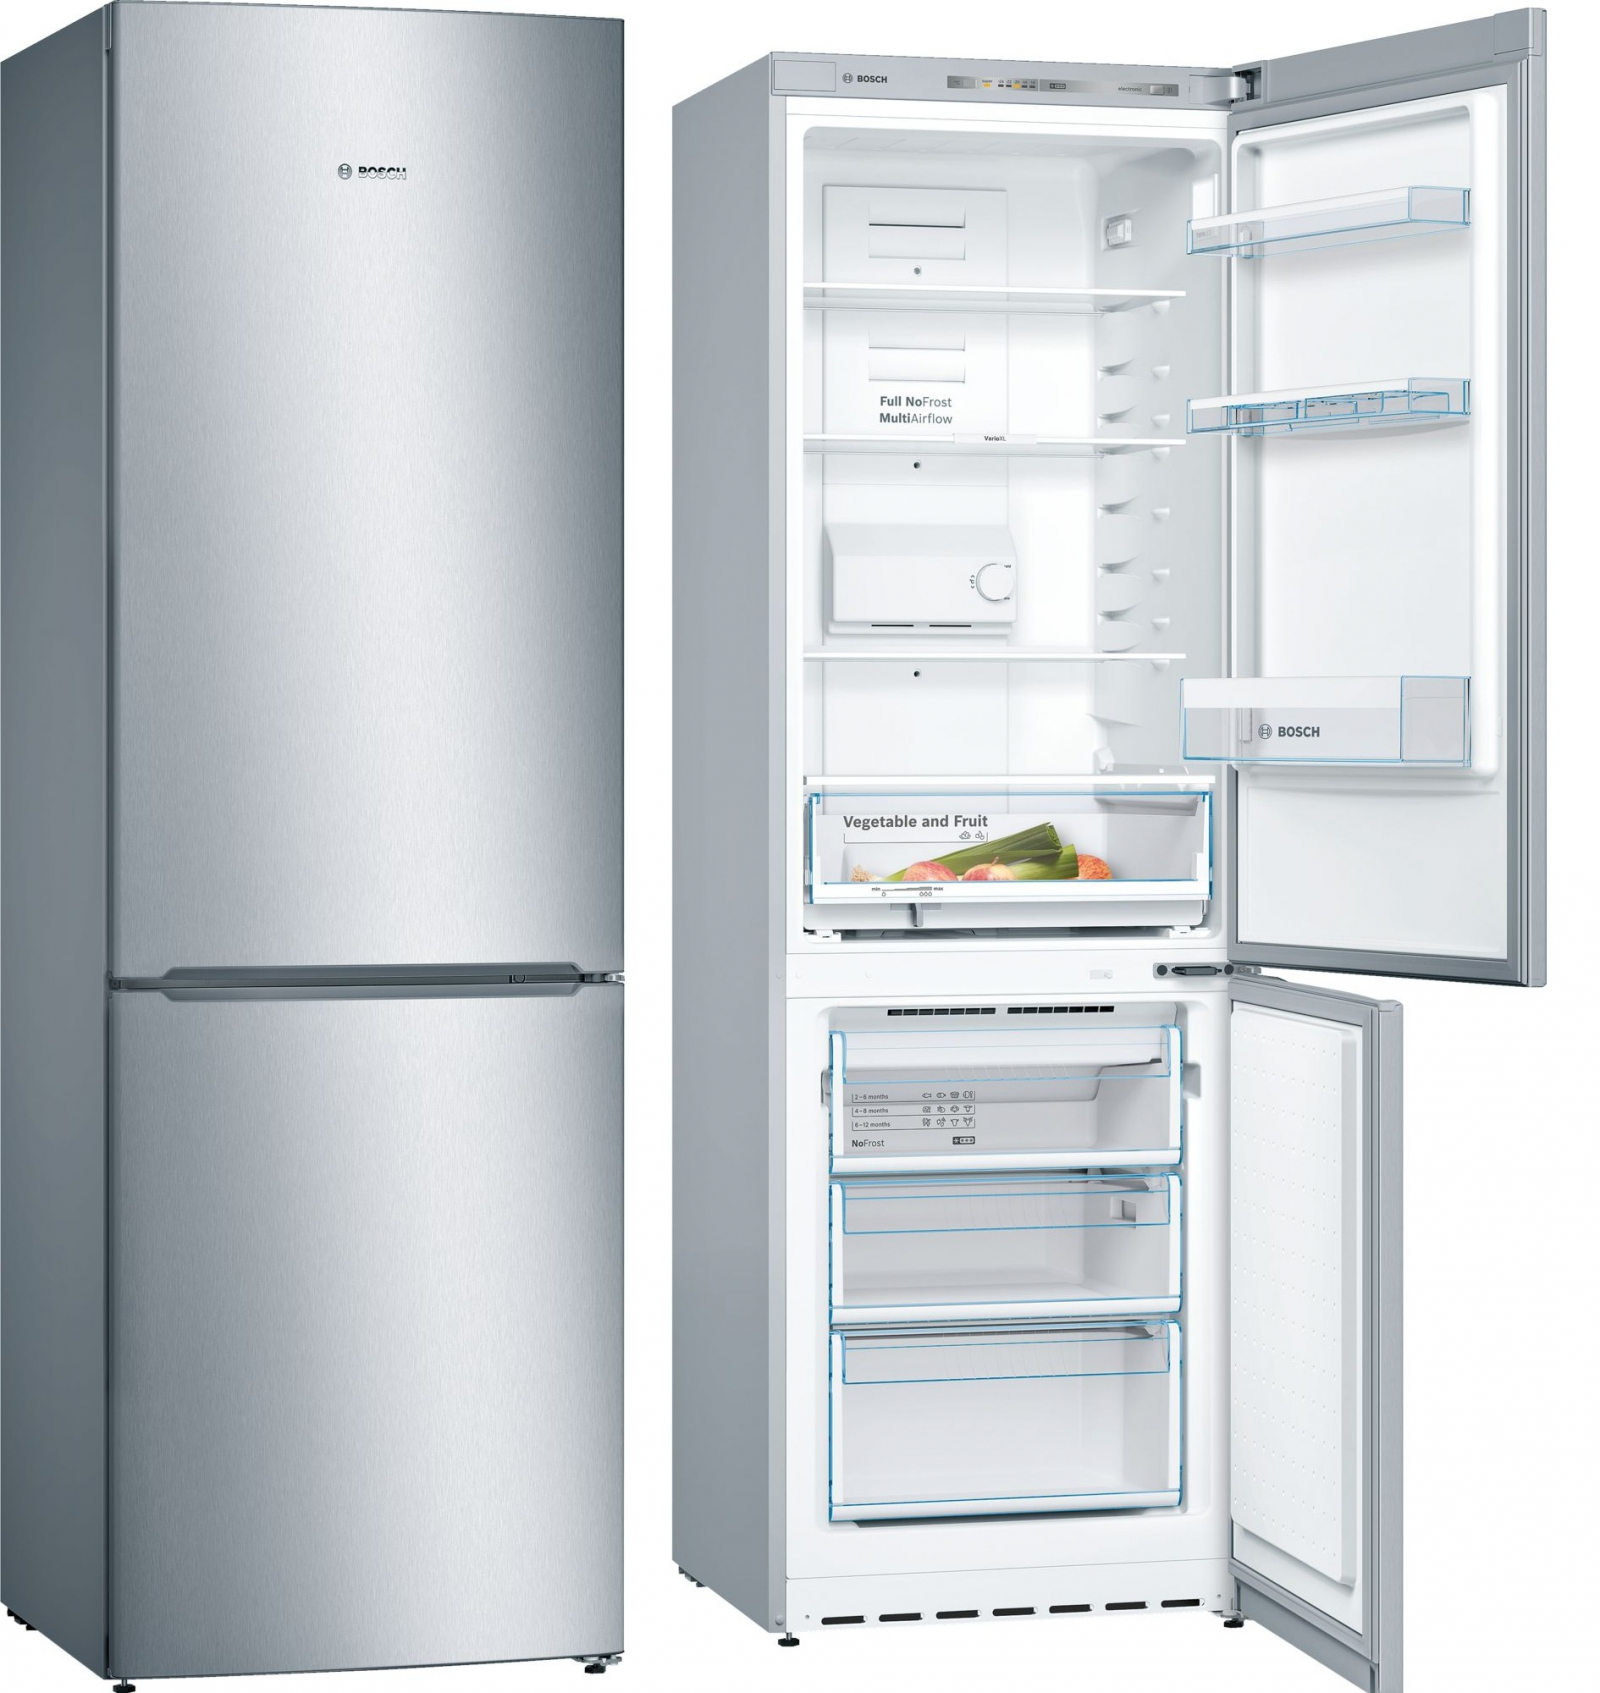 холодильник bosch kgn36nl14r, купить в Красноярске холодильник bosch kgn36nl14r,  купить в Красноярске дешево холодильник bosch kgn36nl14r, купить в Красноярске минимальной цене холодильник bosch kgn36nl14r